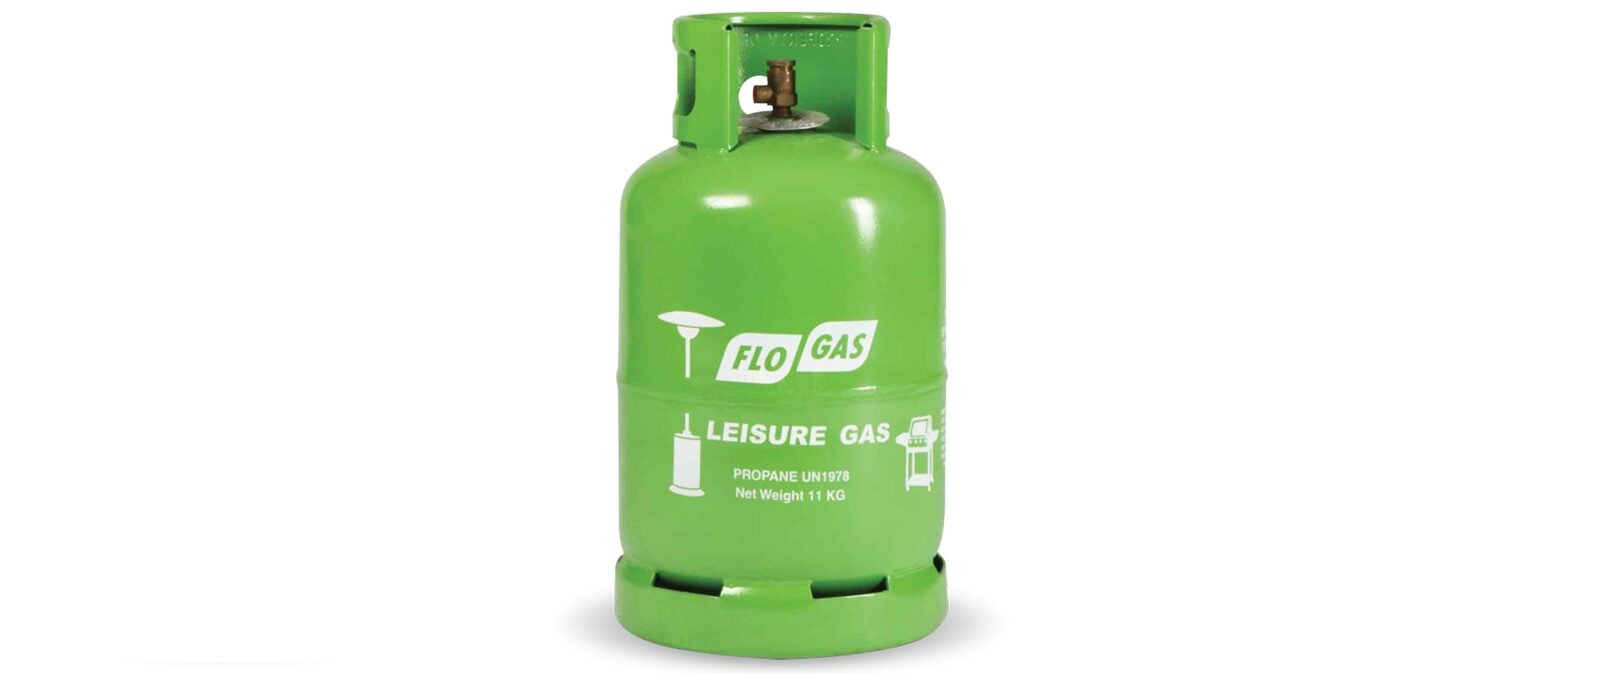 11kg Leisure Gas Cylinder